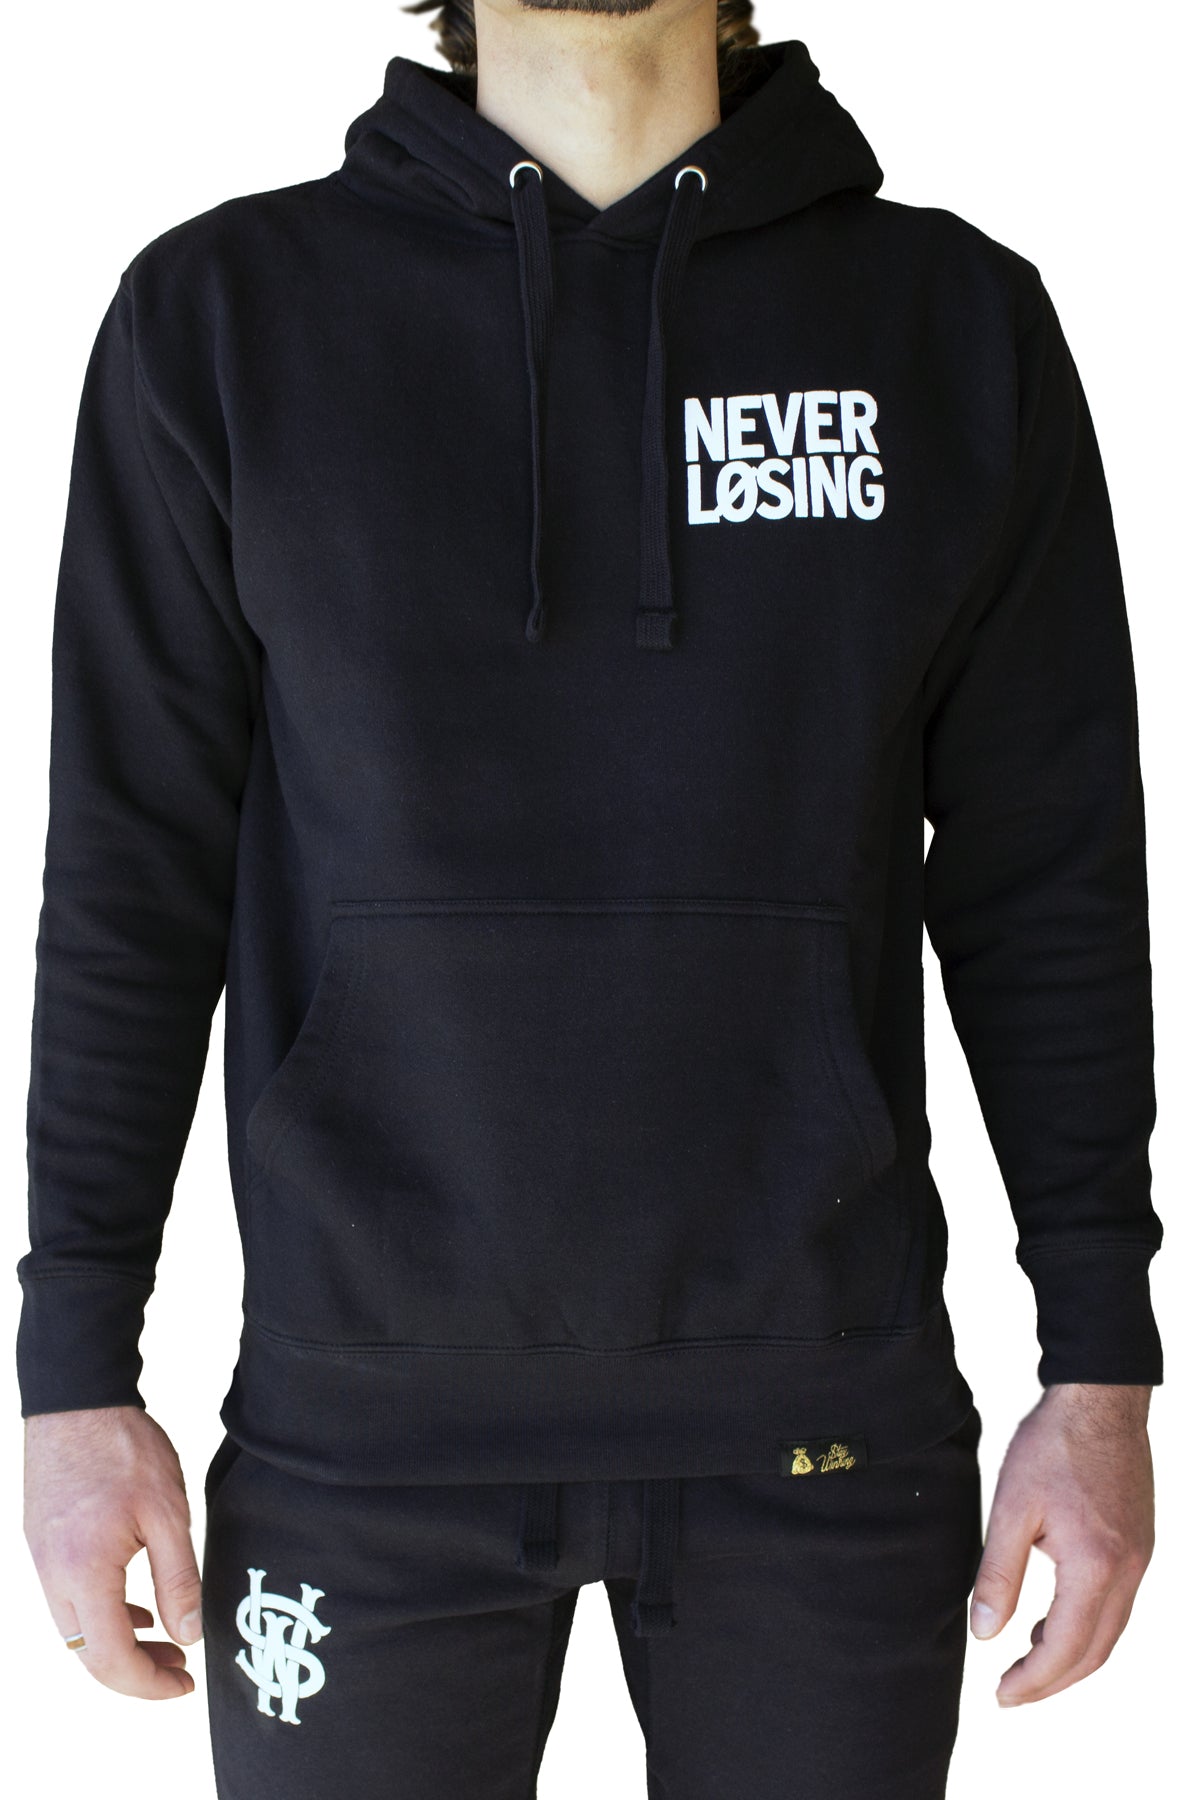 stay winning never losing black/white hoodie